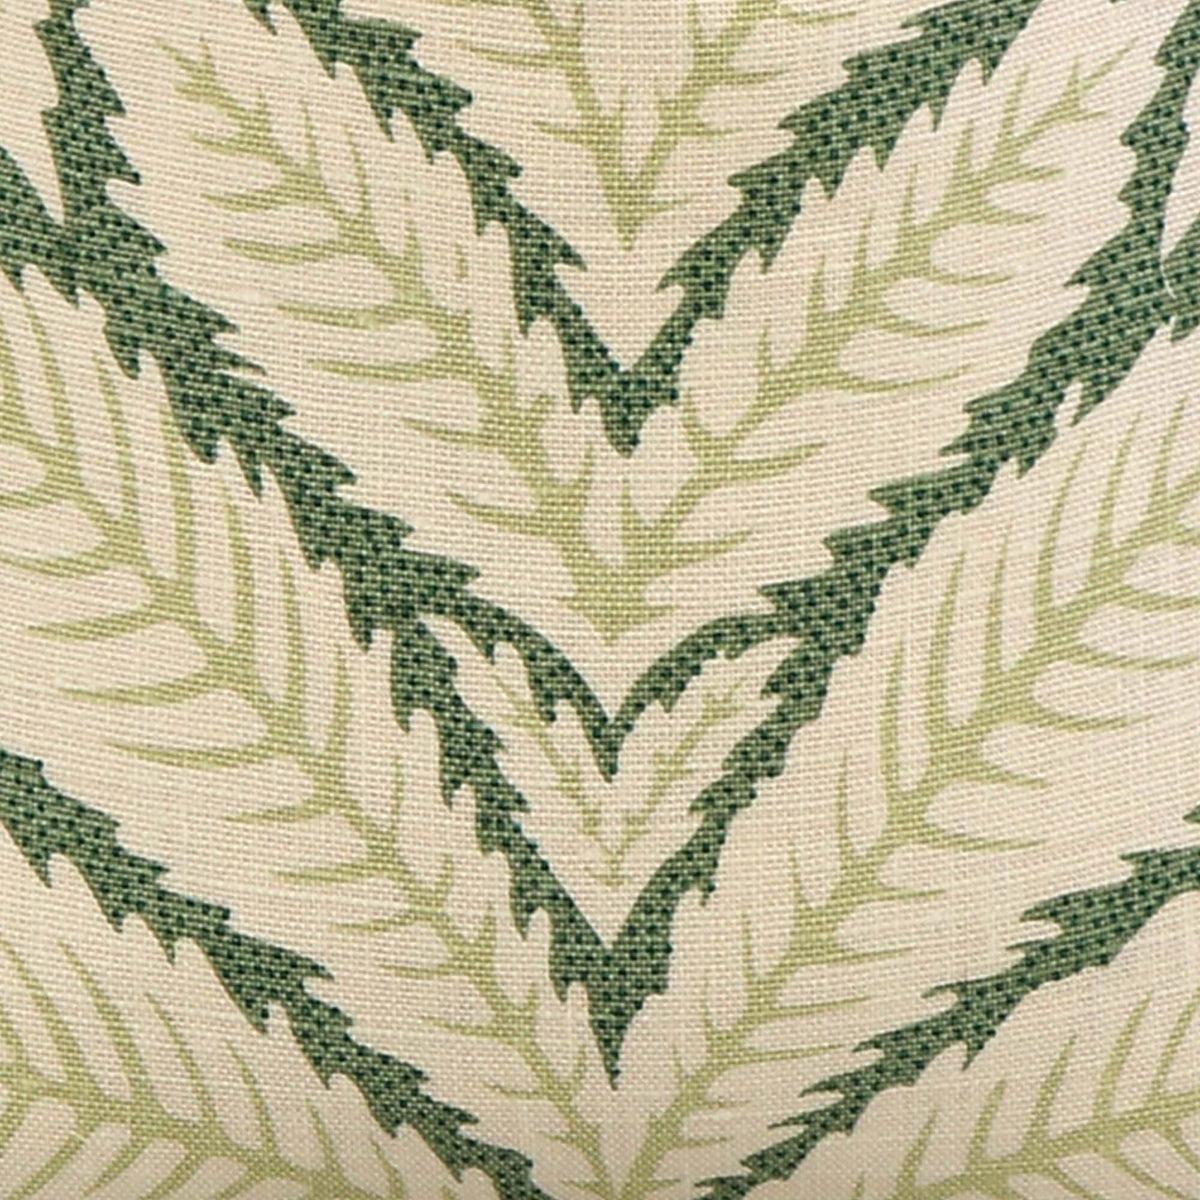 Talavera Leaf / 4x4 inch Fabric Swatch